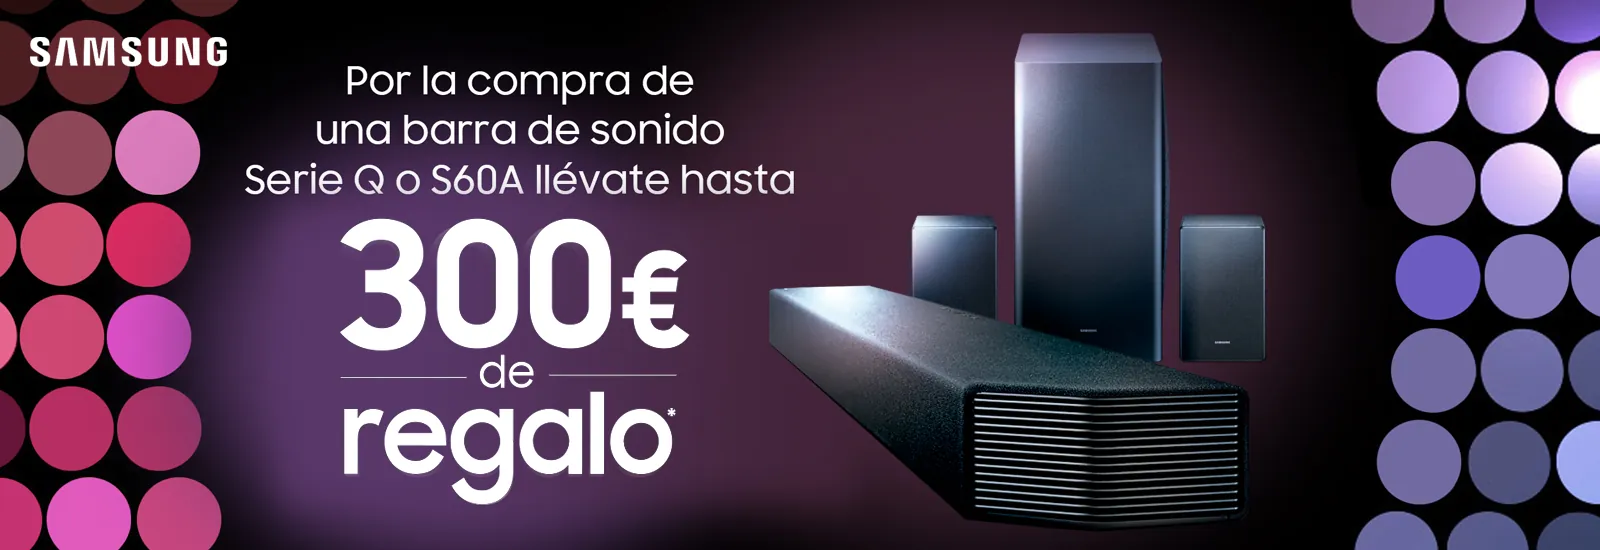 Hasta 300€ de Regalo con Samsung por la compra de una barra de sonido